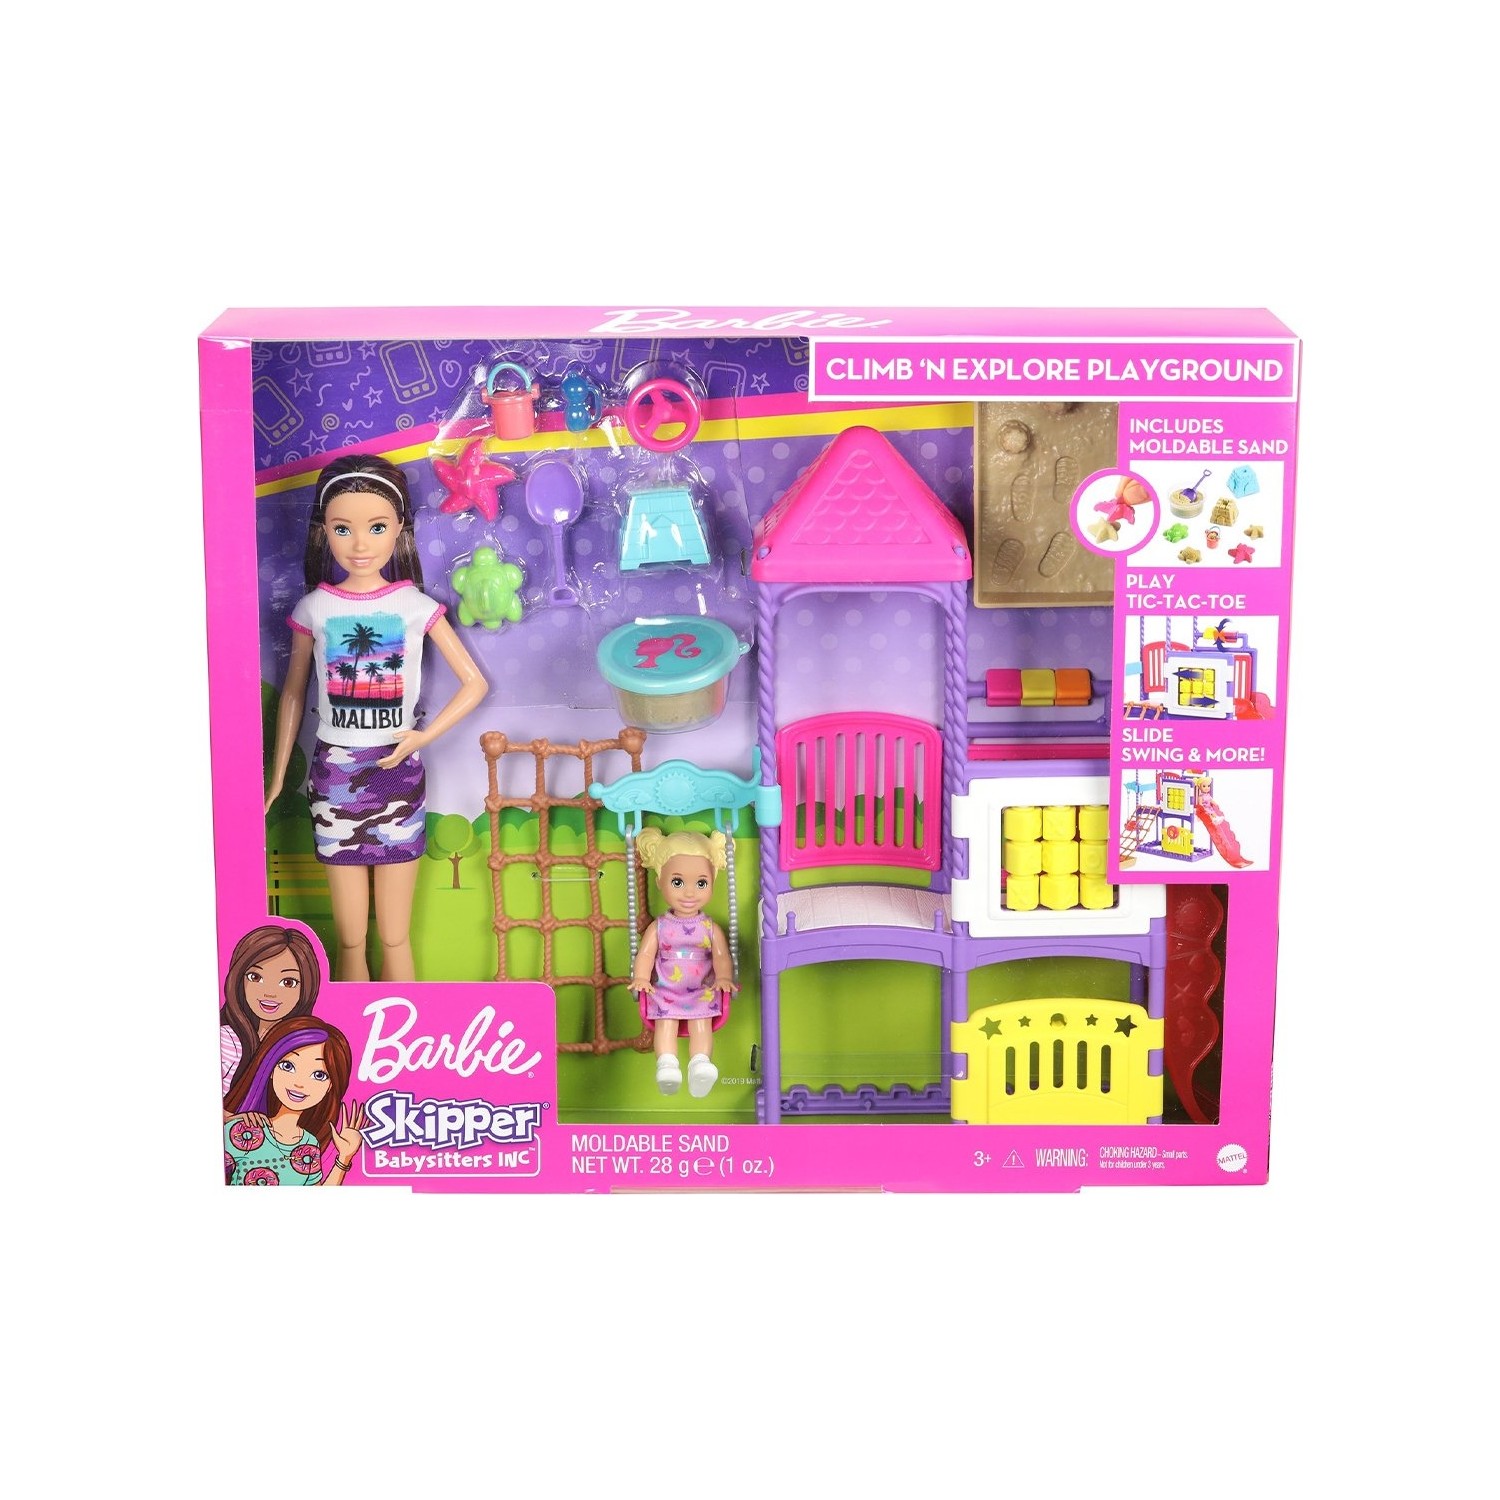 Игровой набор Barbie Skipper Babysitters игровой набор barbie с рабочим столом